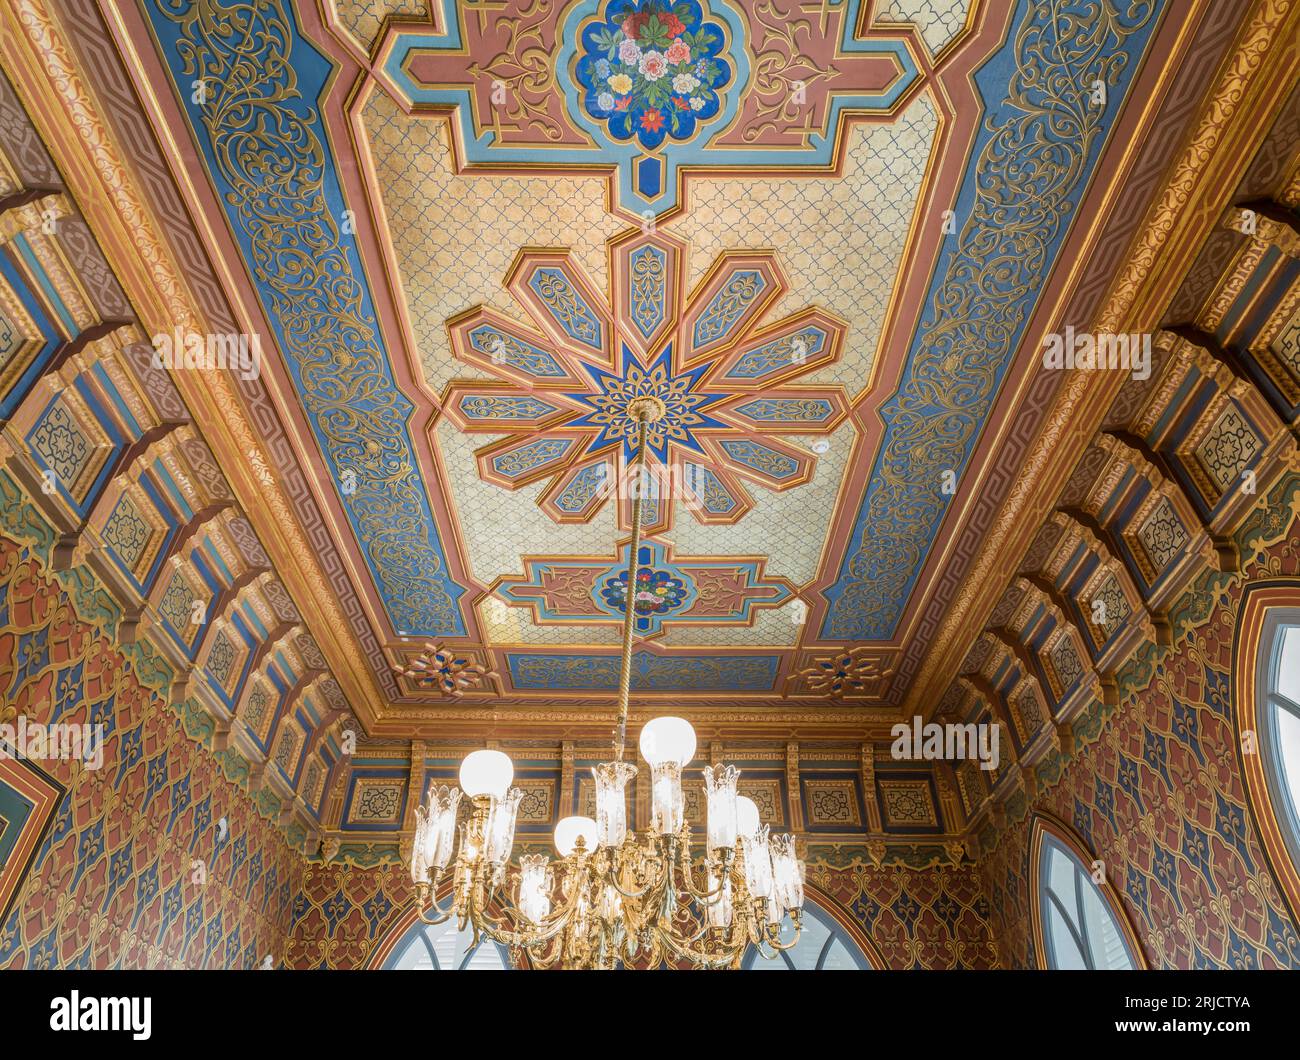 Sfondo piastrellato nella moschea. Cupola della moschea, ornamenti orientali. immagini dell'architettura islamica architettura interior.interior Foto Stock